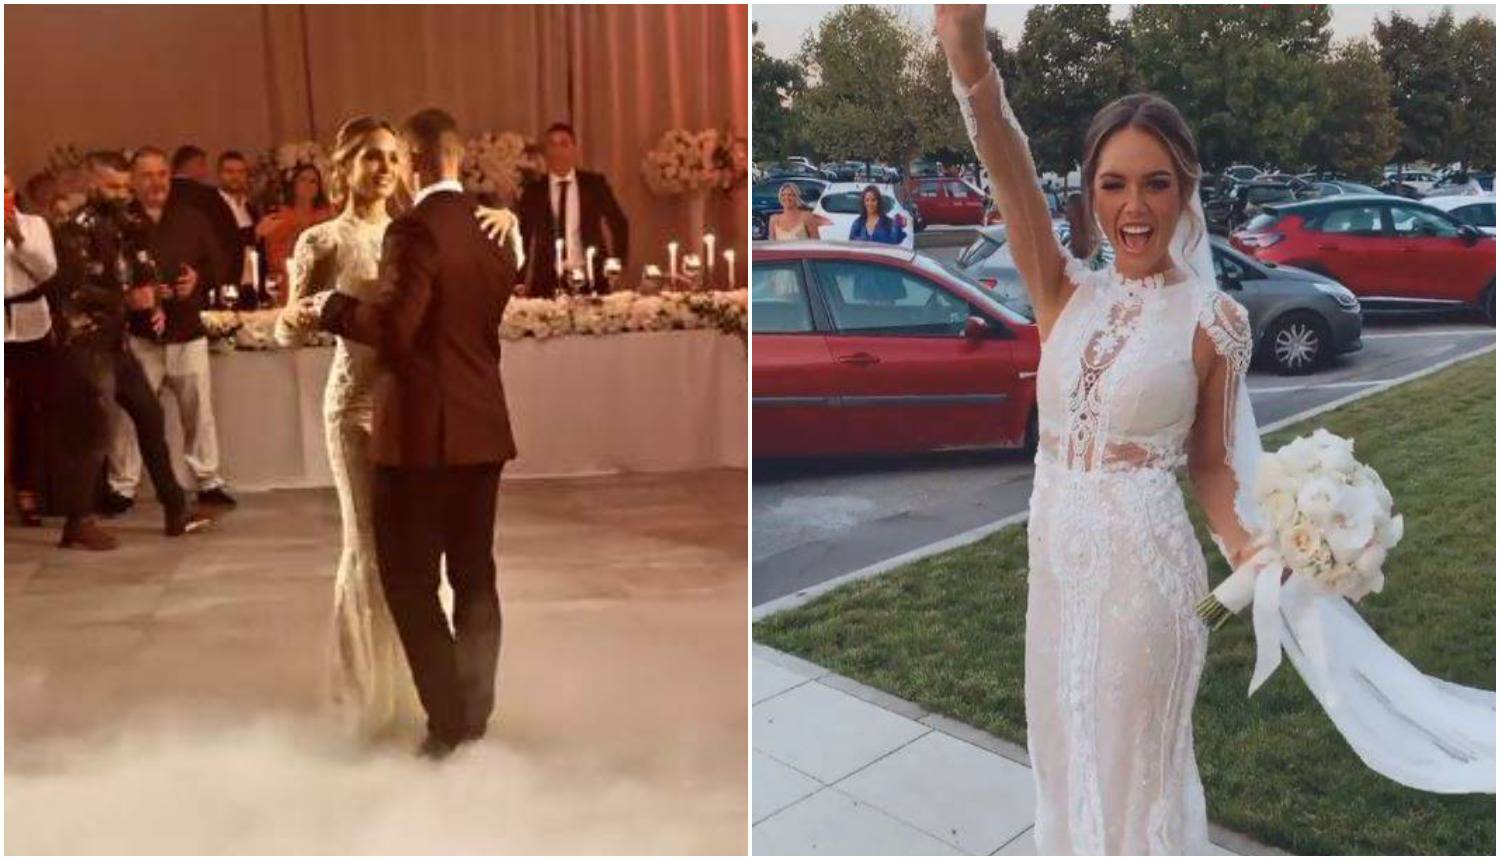 Bivša misica Mia Pojatina udala se u vjenčanici od 15 tisuća kuna